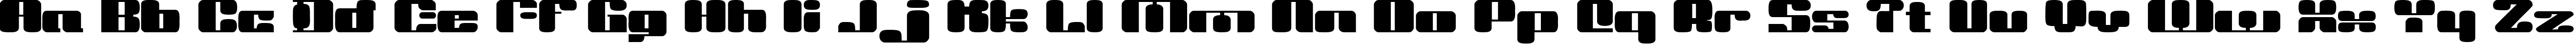 Пример написания английского алфавита шрифтом Dr. Vinyl